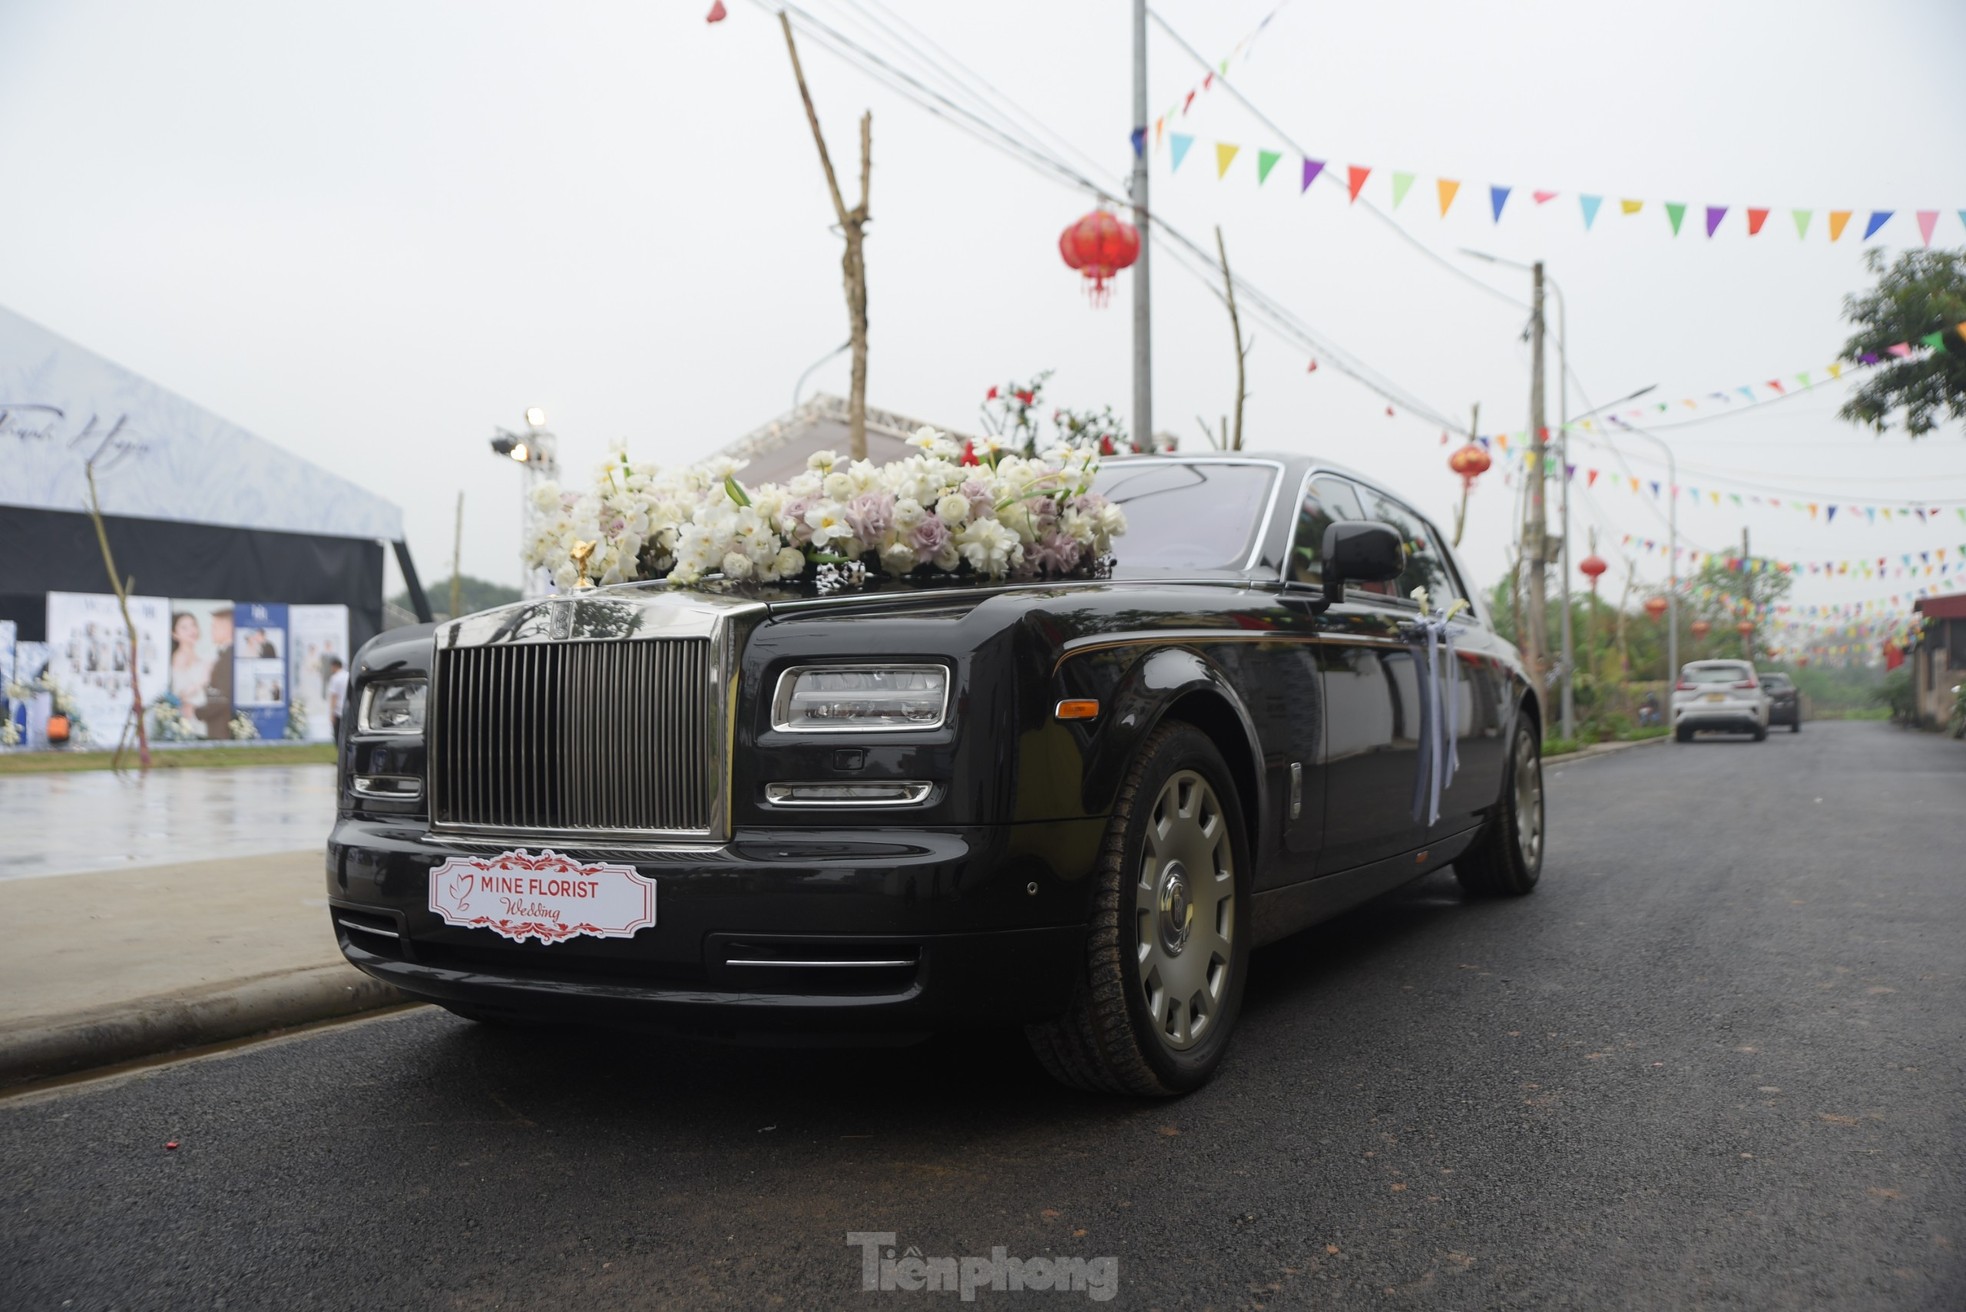 Quang Hải dùng xe 16 tỷ đồng đón cô dâu Chu Thanh Huyền